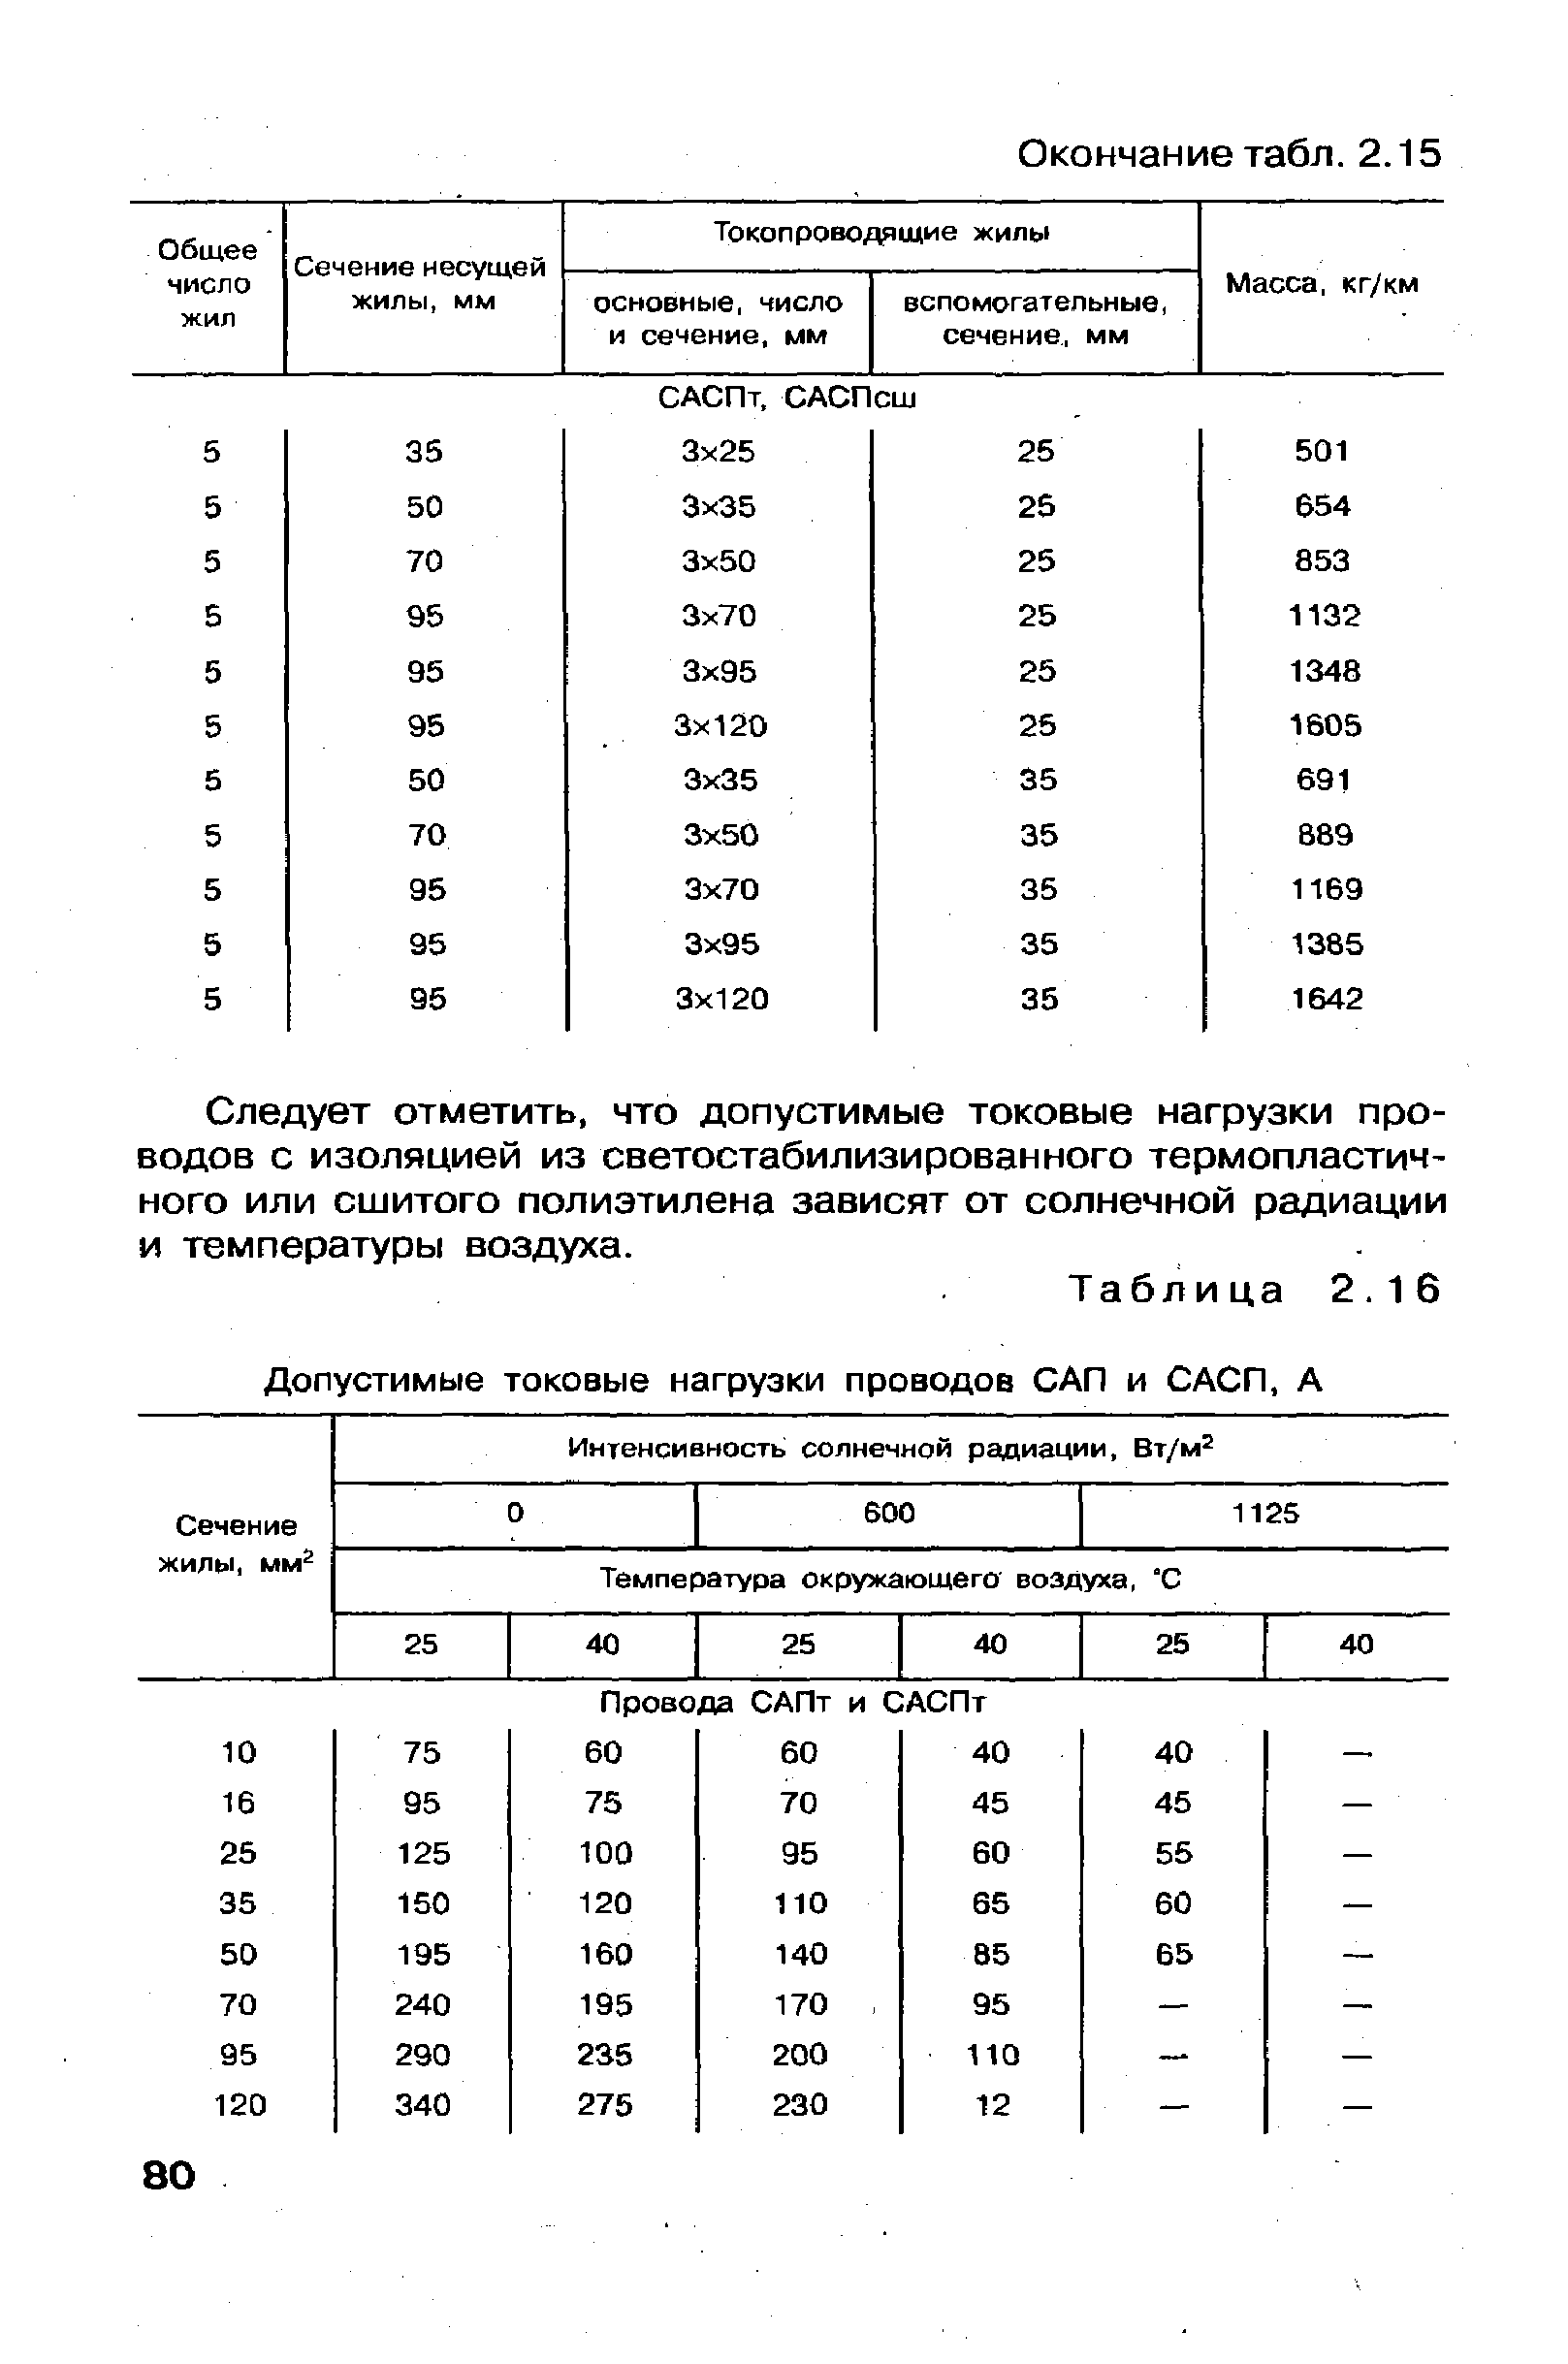 Таблица 2.16 Допустимые токовые нагрузки проводов САП и САСП, А
